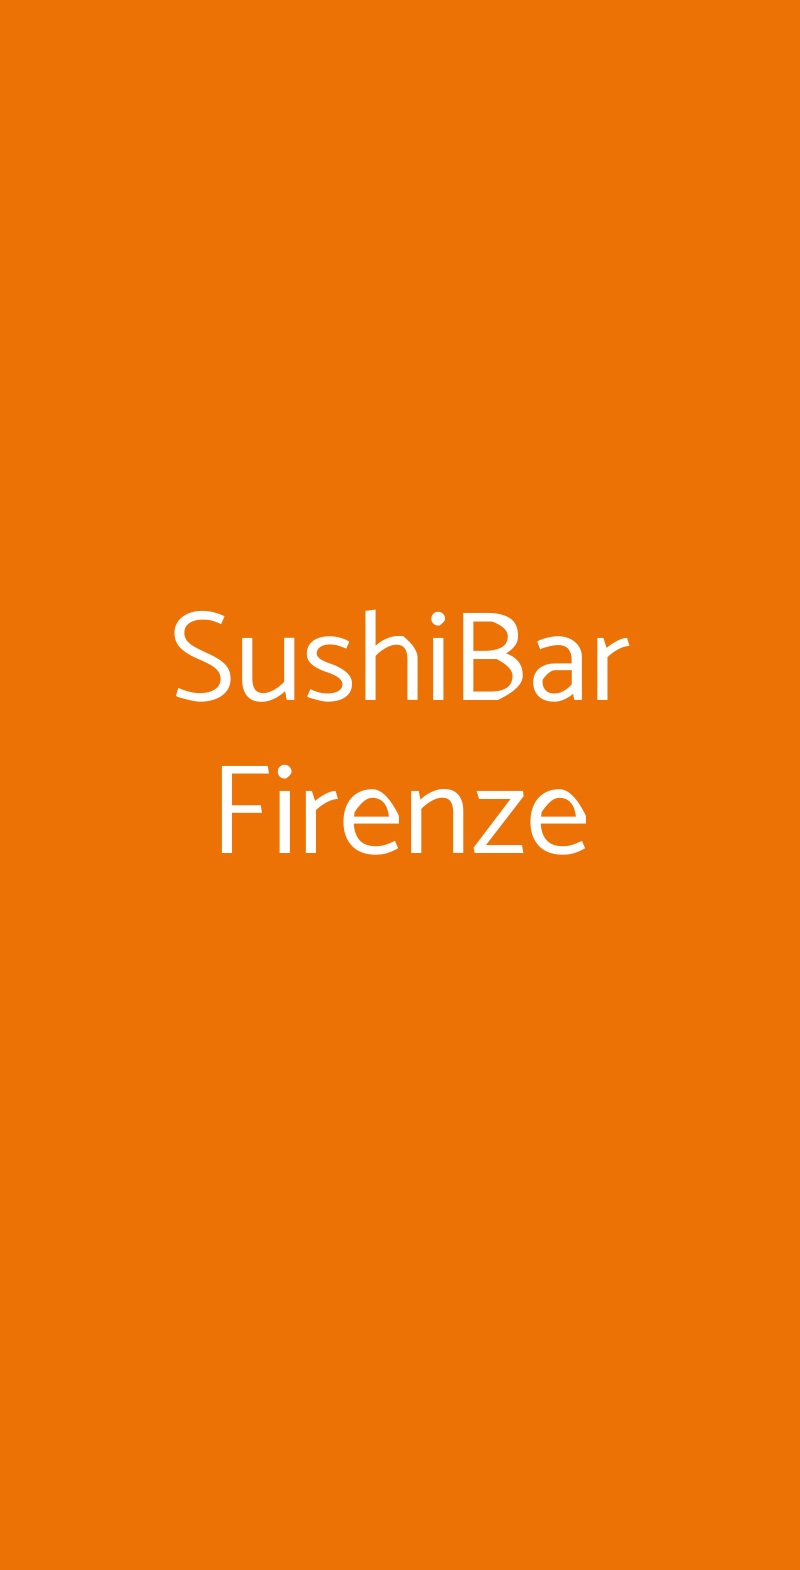 SushiBar Firenze Milano menù 1 pagina